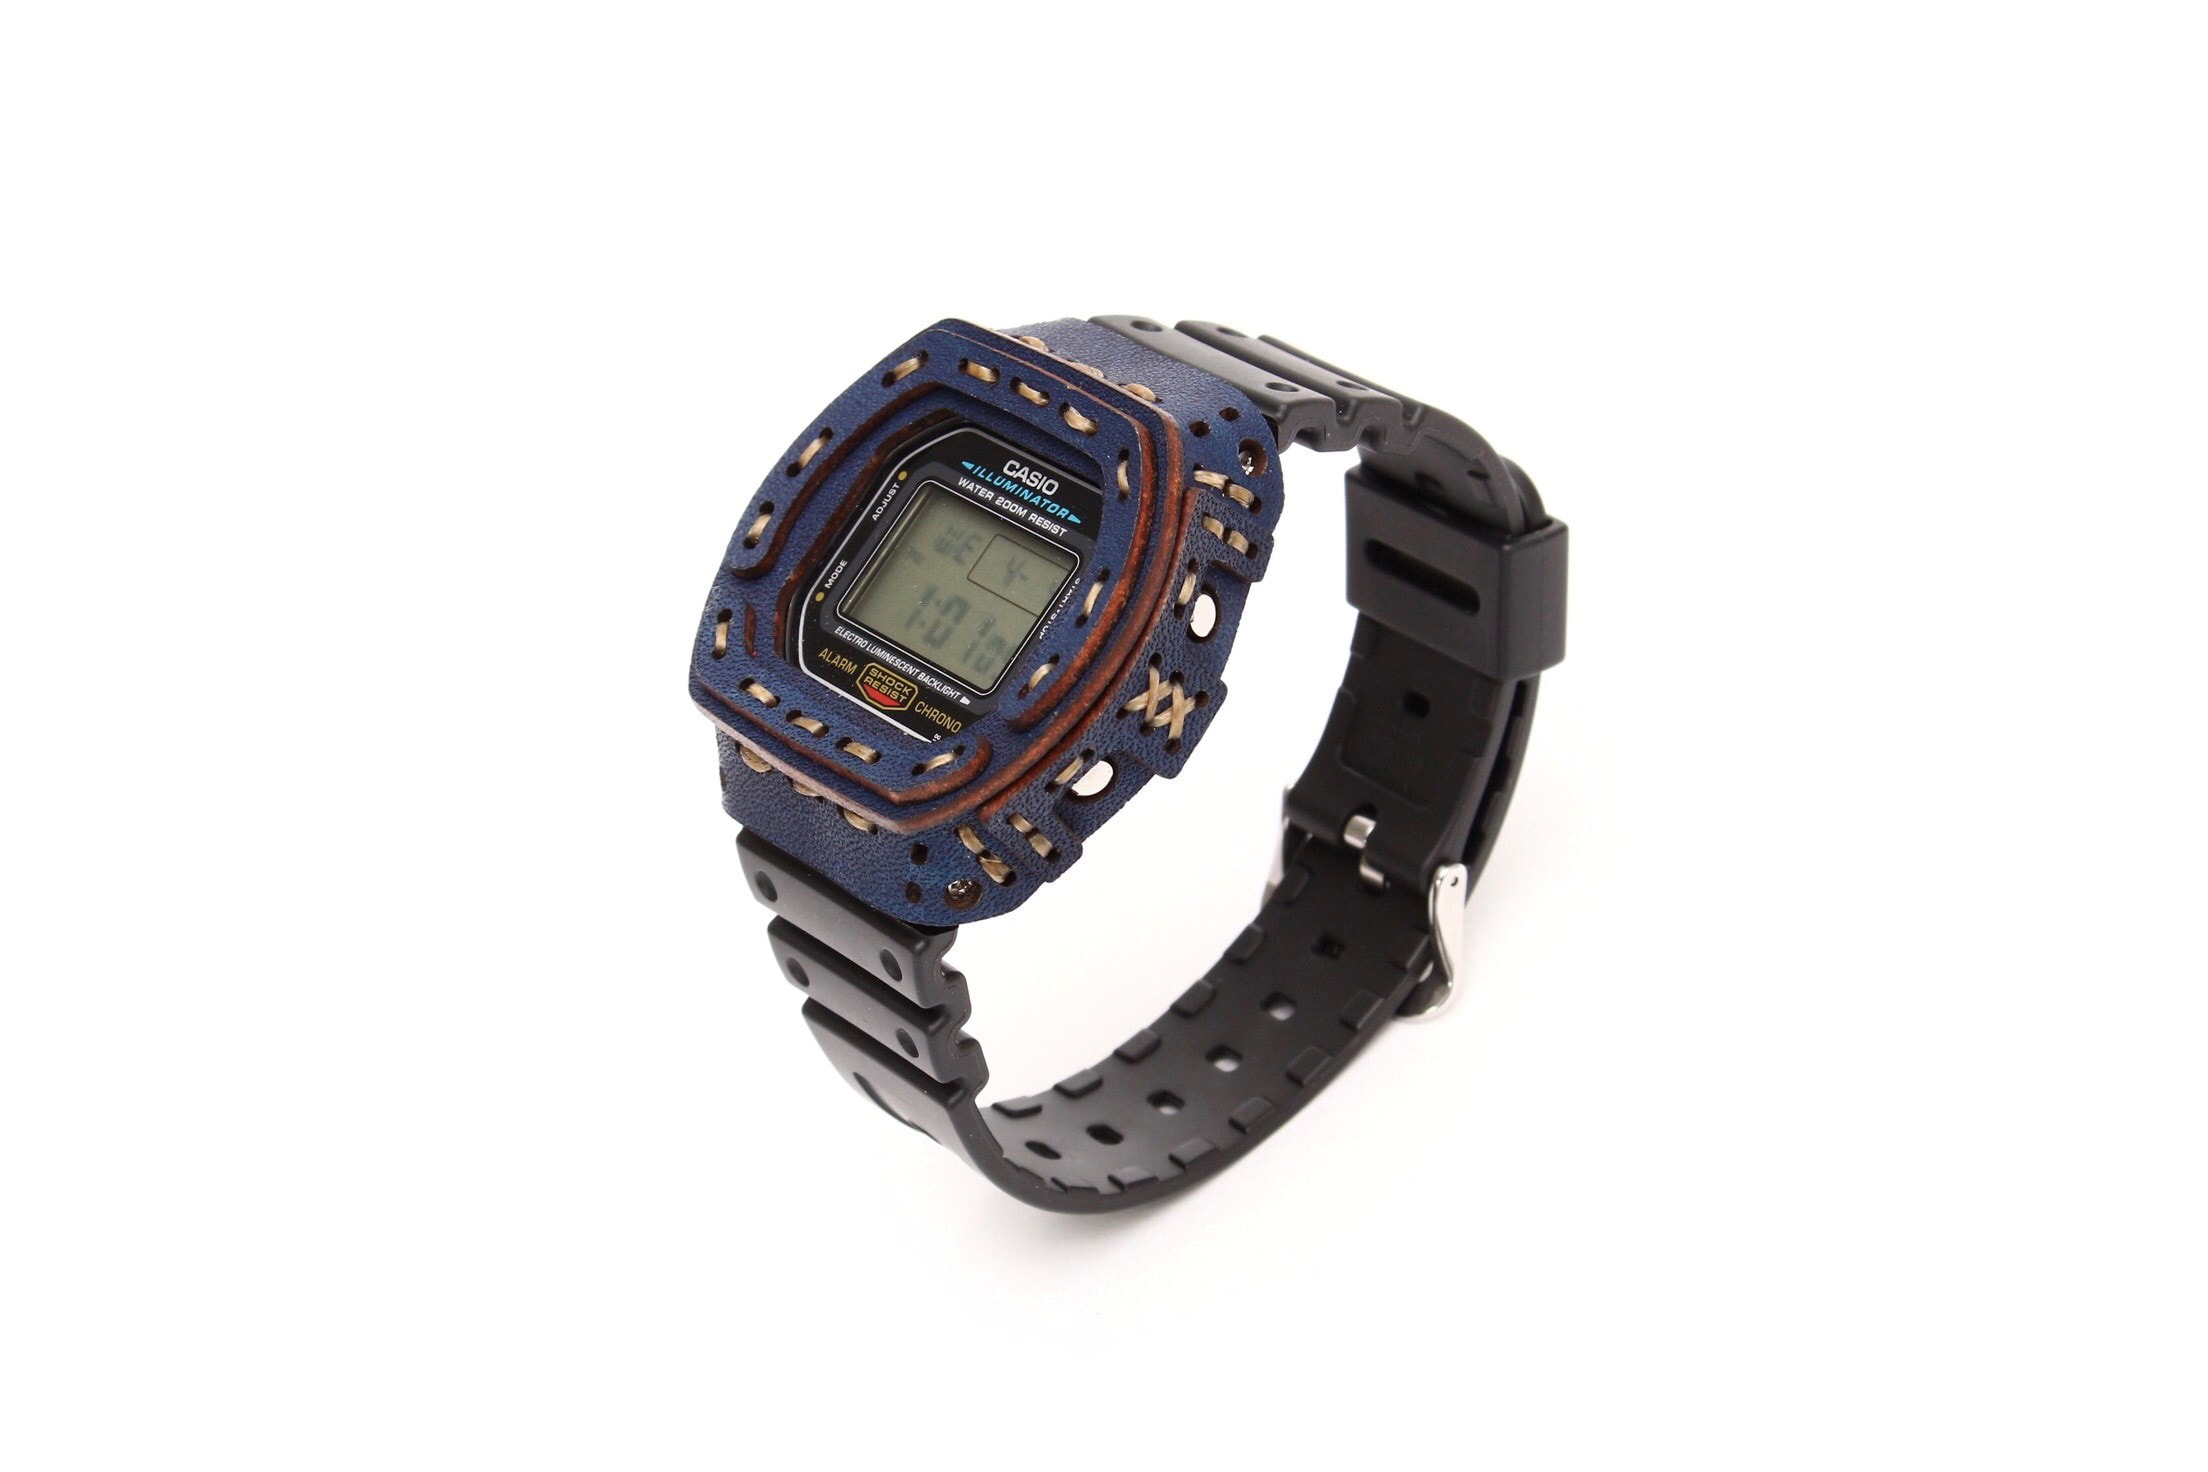 日本品牌 armadillo 加推藍染皮革手造腕錶保護套